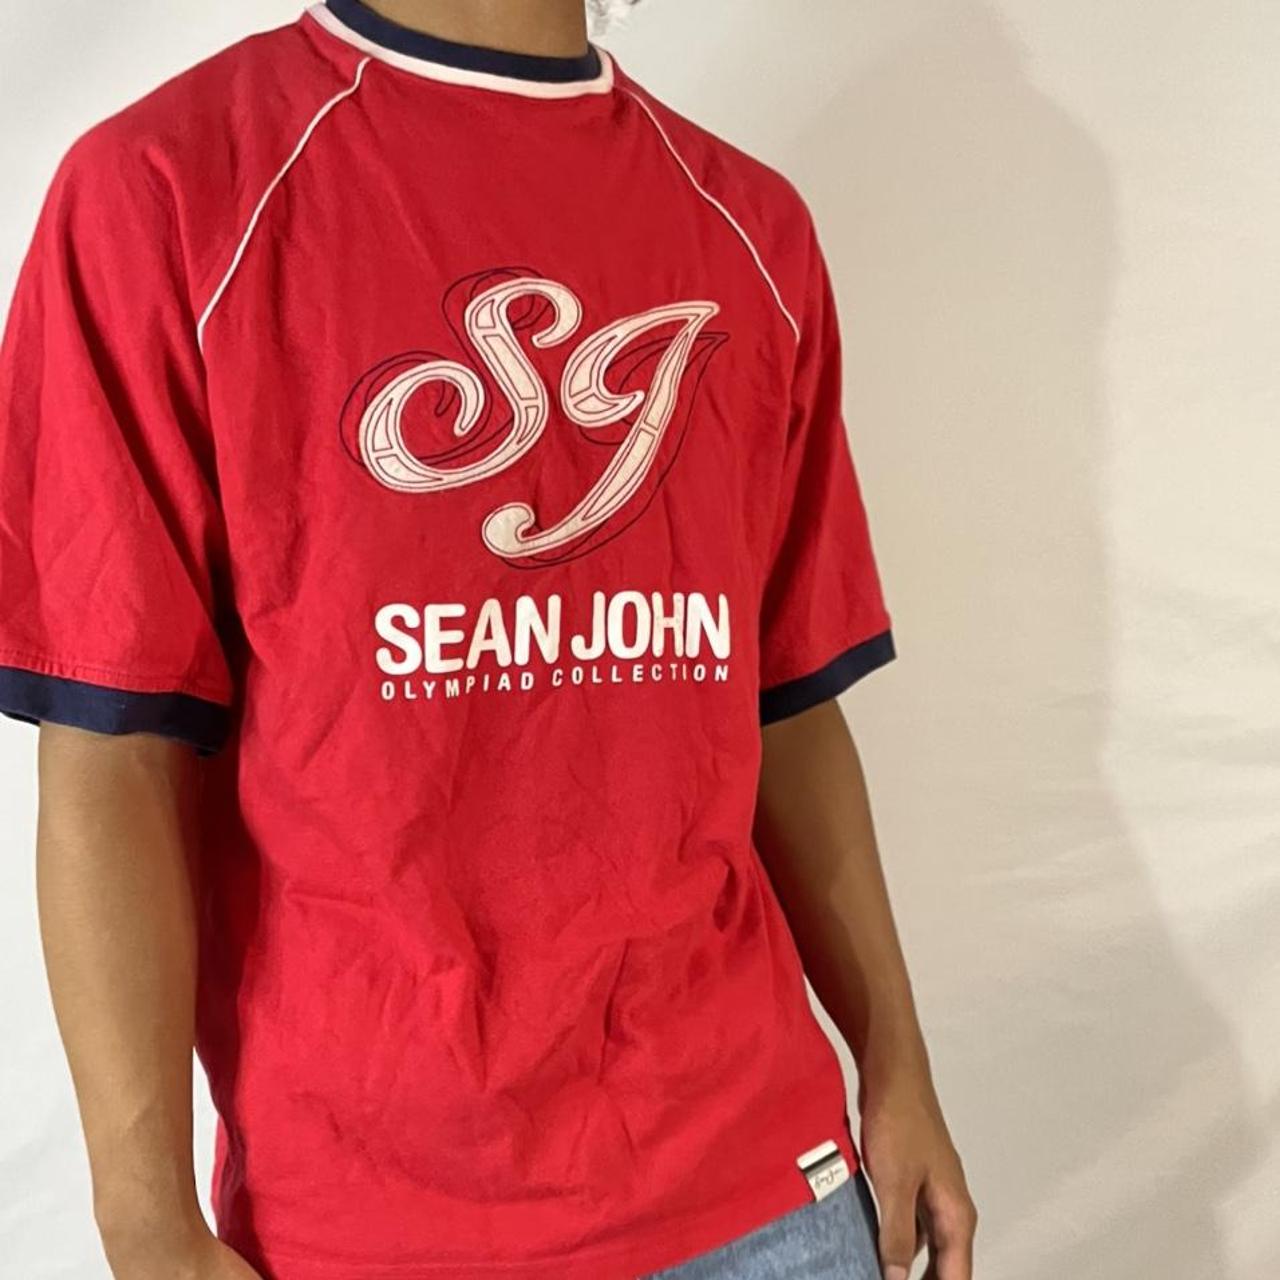 Sean John Men's Red T-shirt